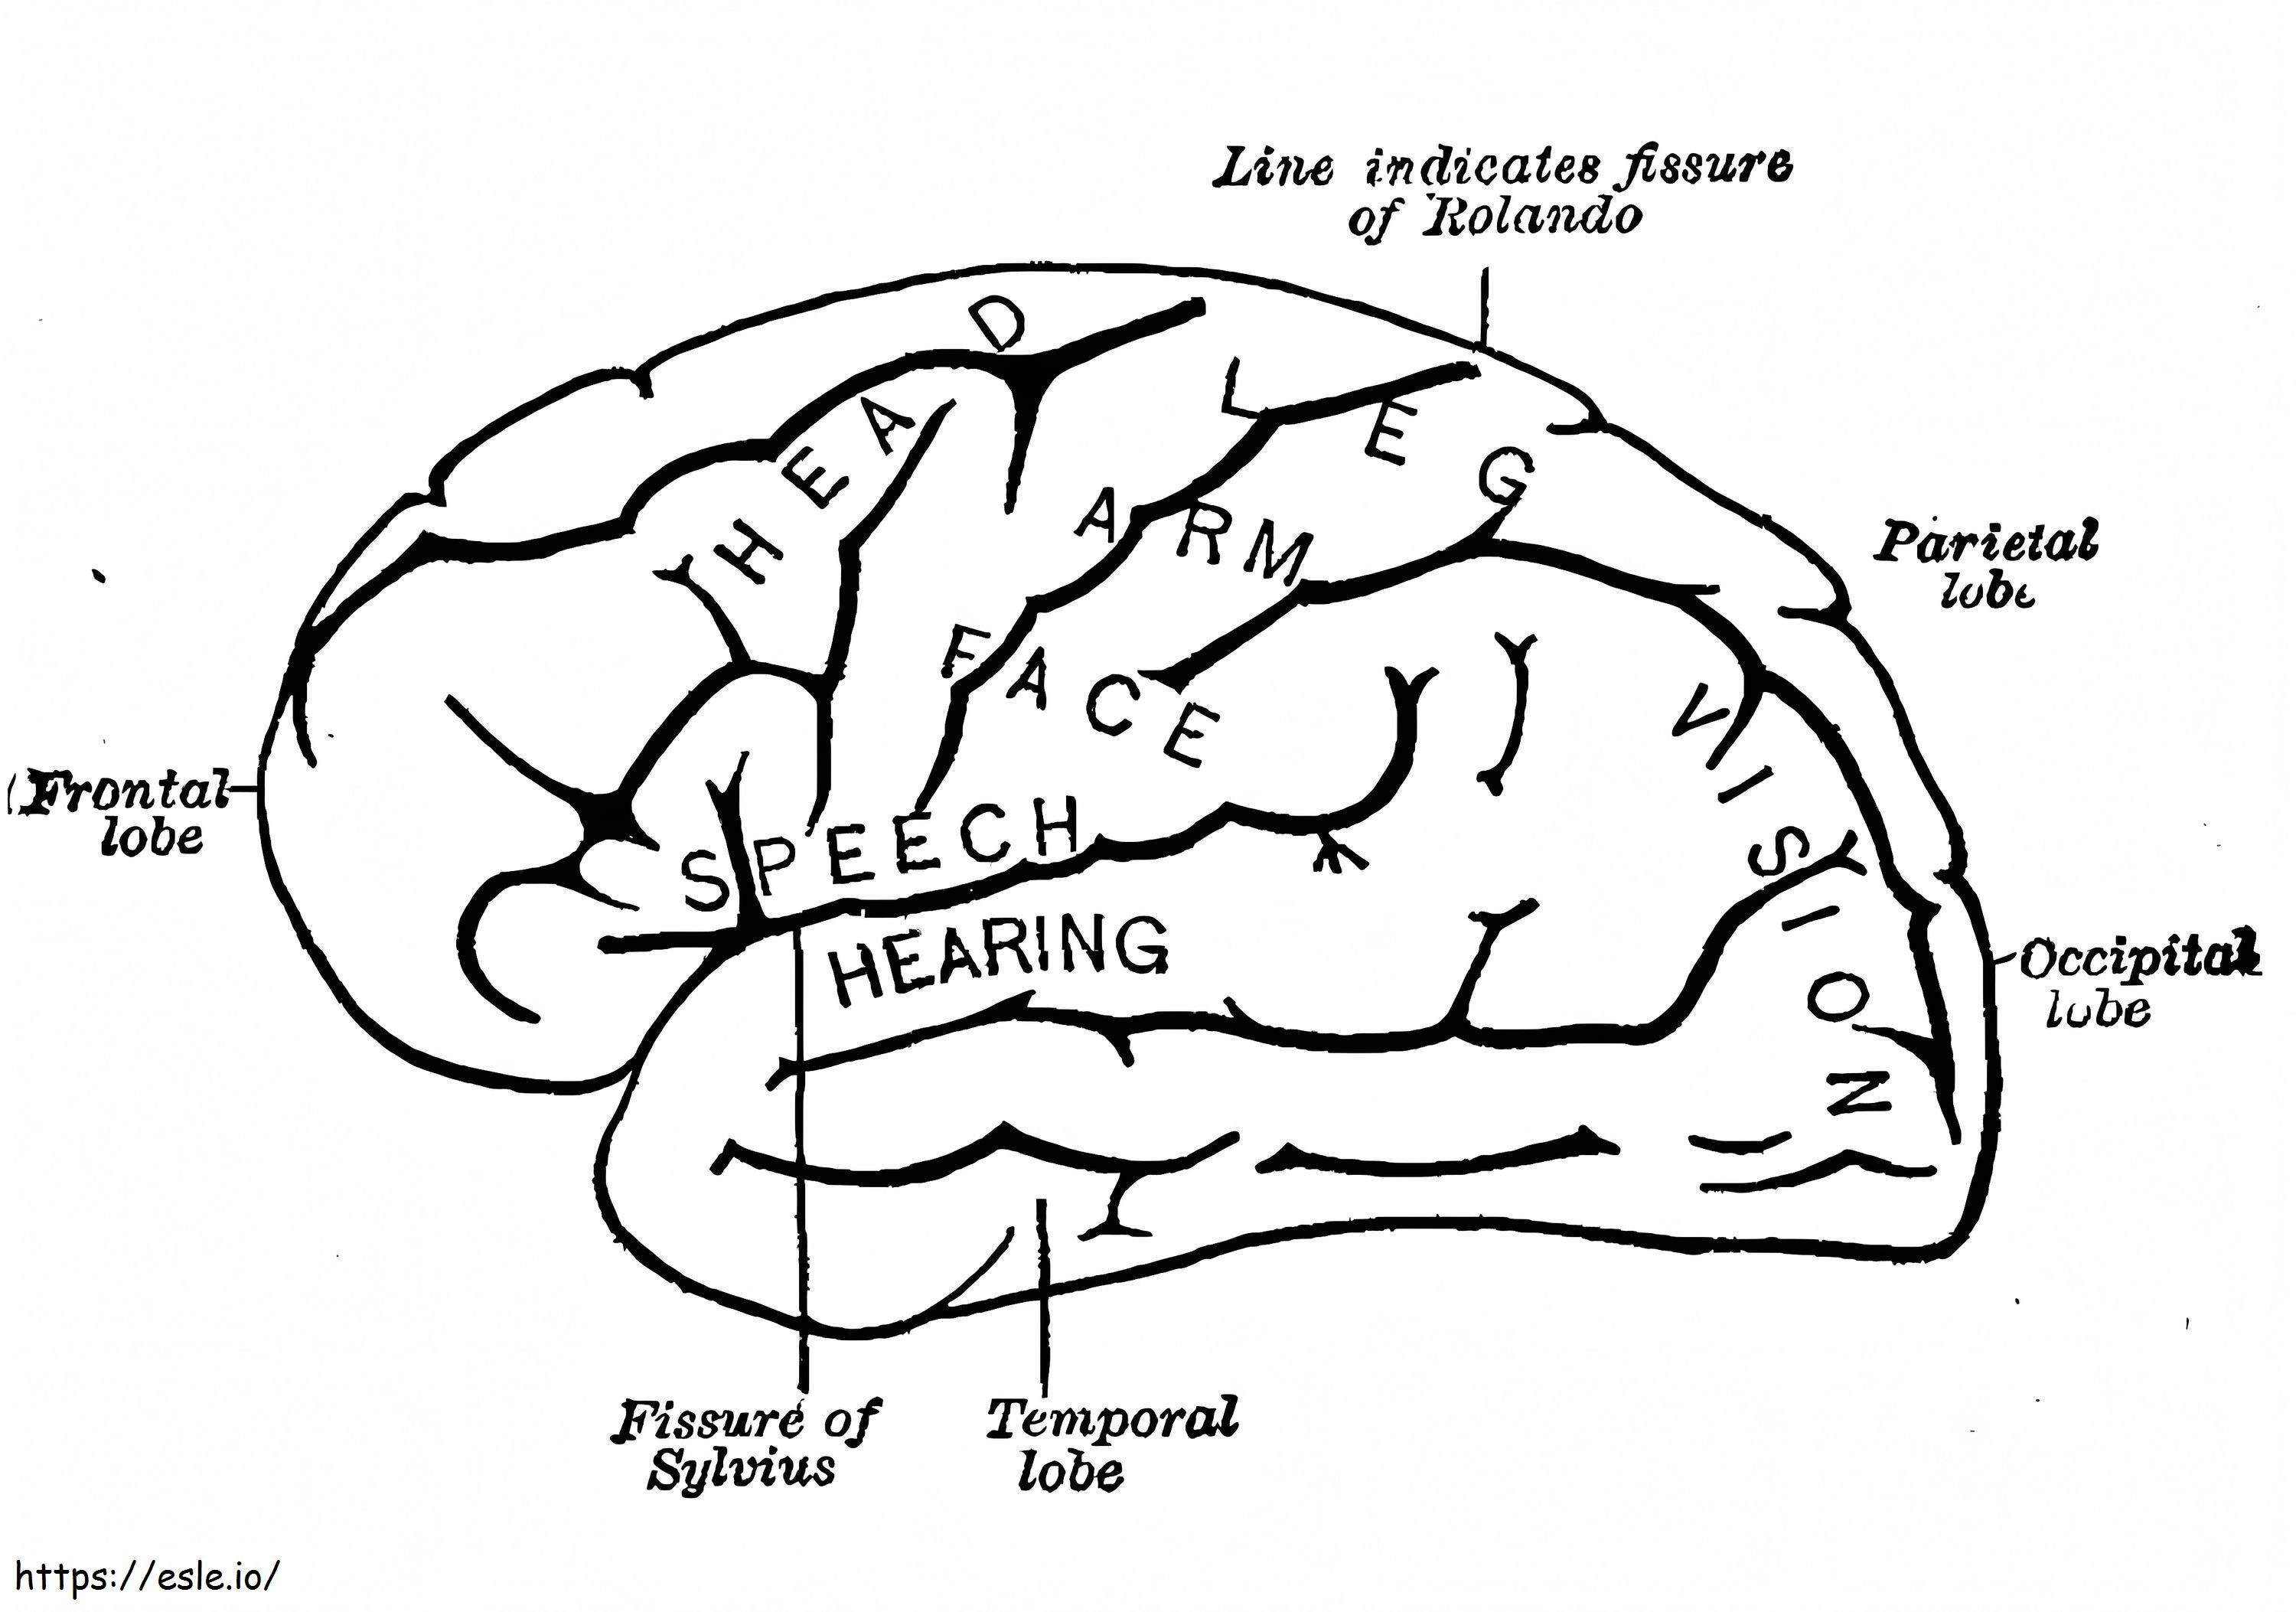 Menschliches Gehirn 7 ausmalbilder